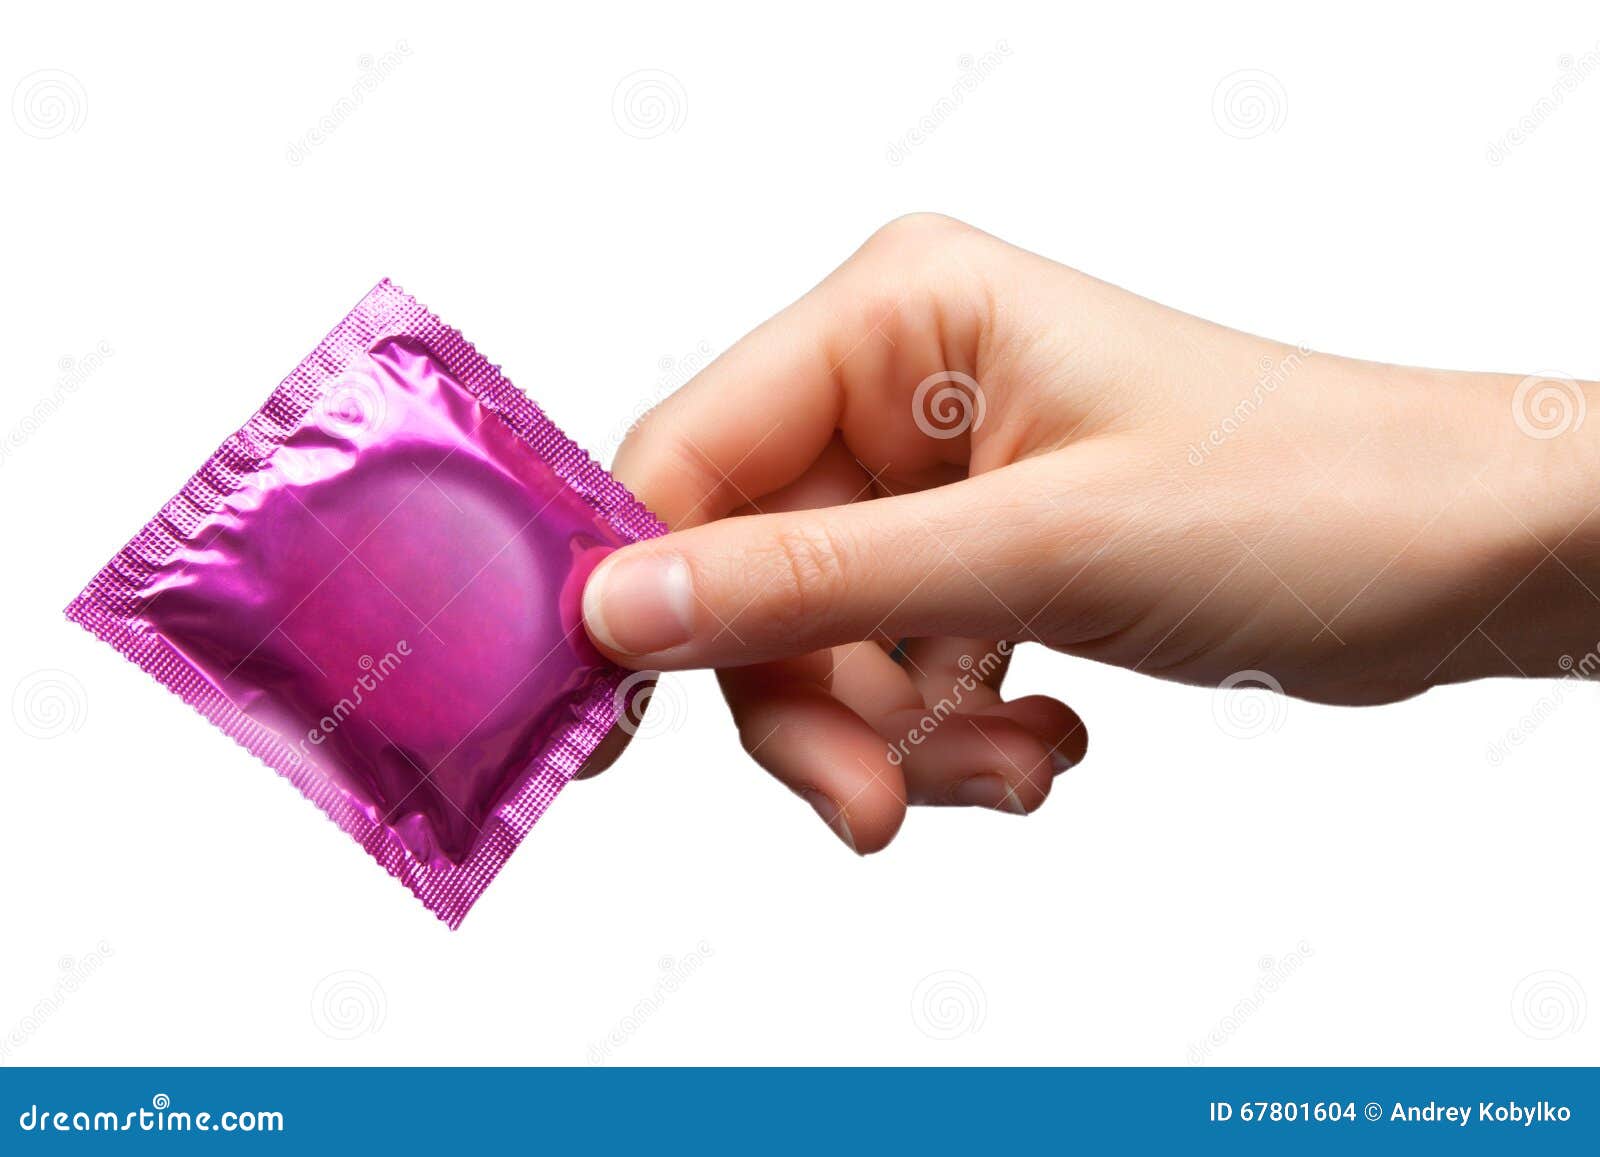 der kondom